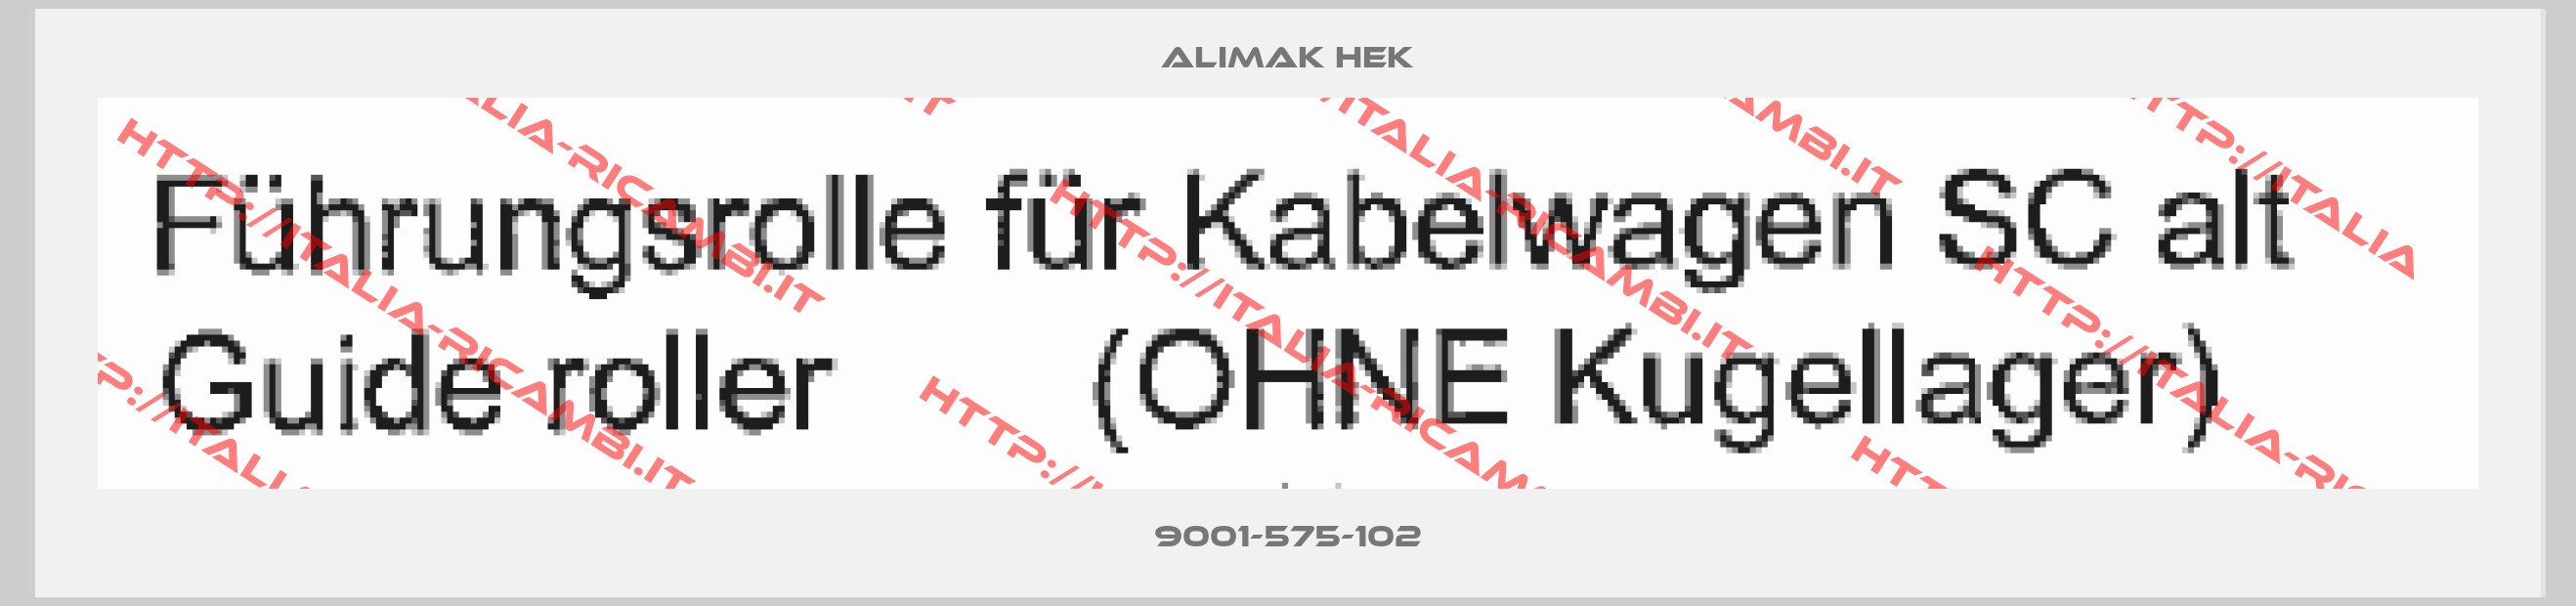 Alimak Hek-9001-575-102